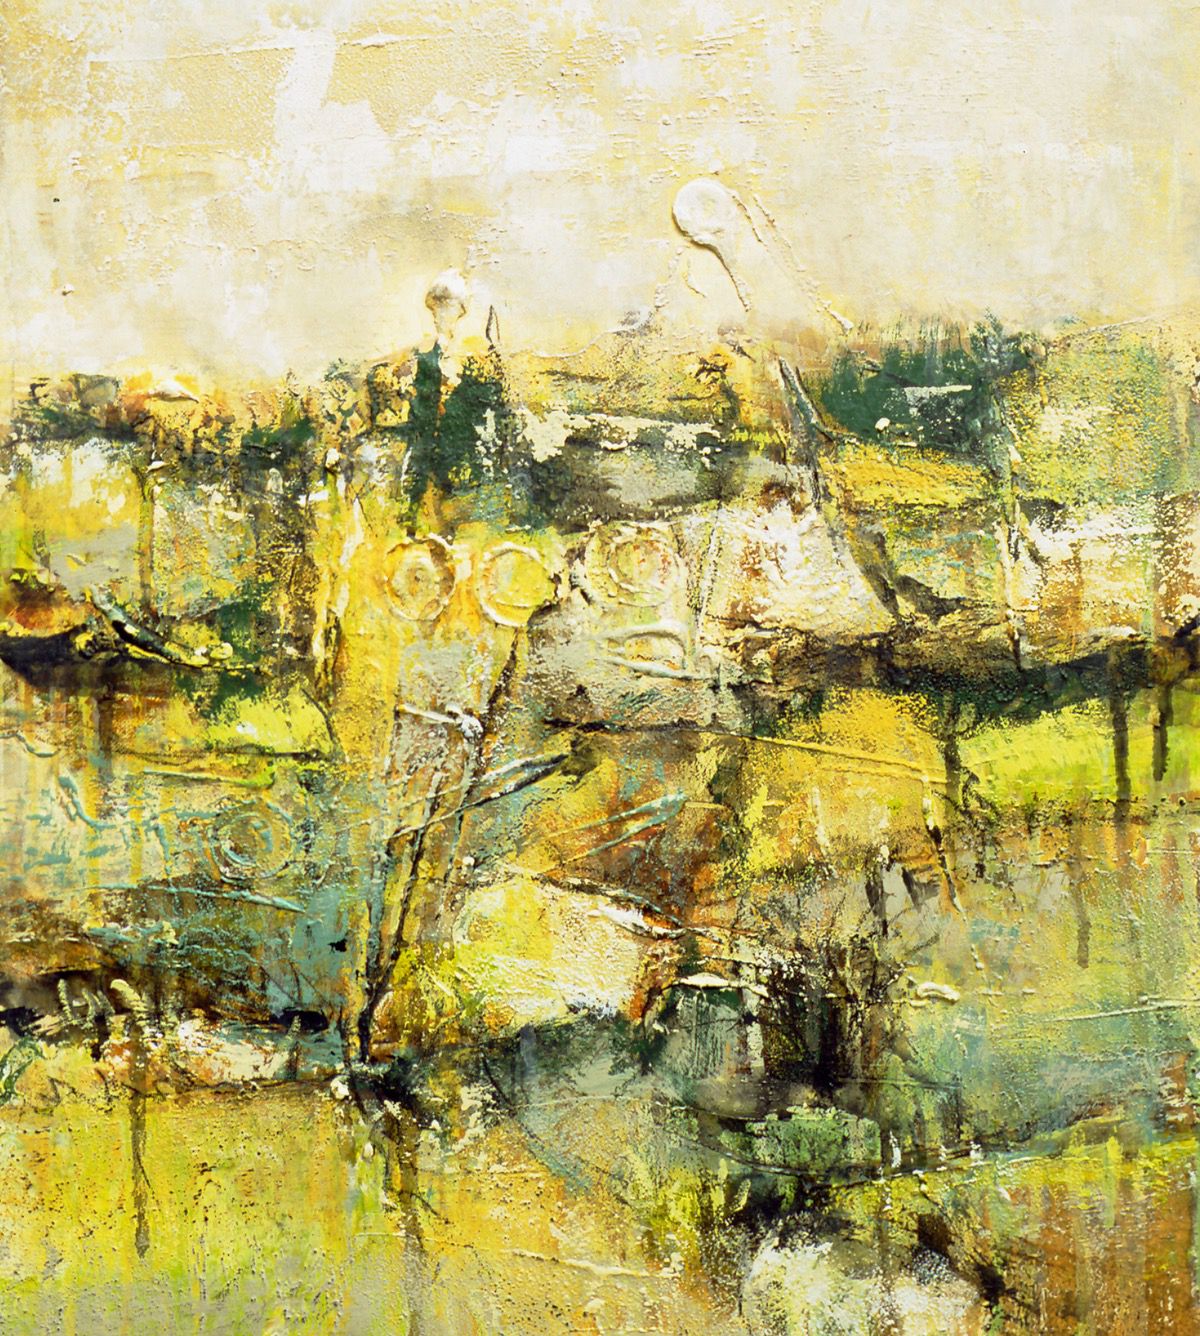 “Land”, 2004, 41 x 36 cm. Akryl, olie og sand på lærred. (Carsten Frank nr. 941) Sold